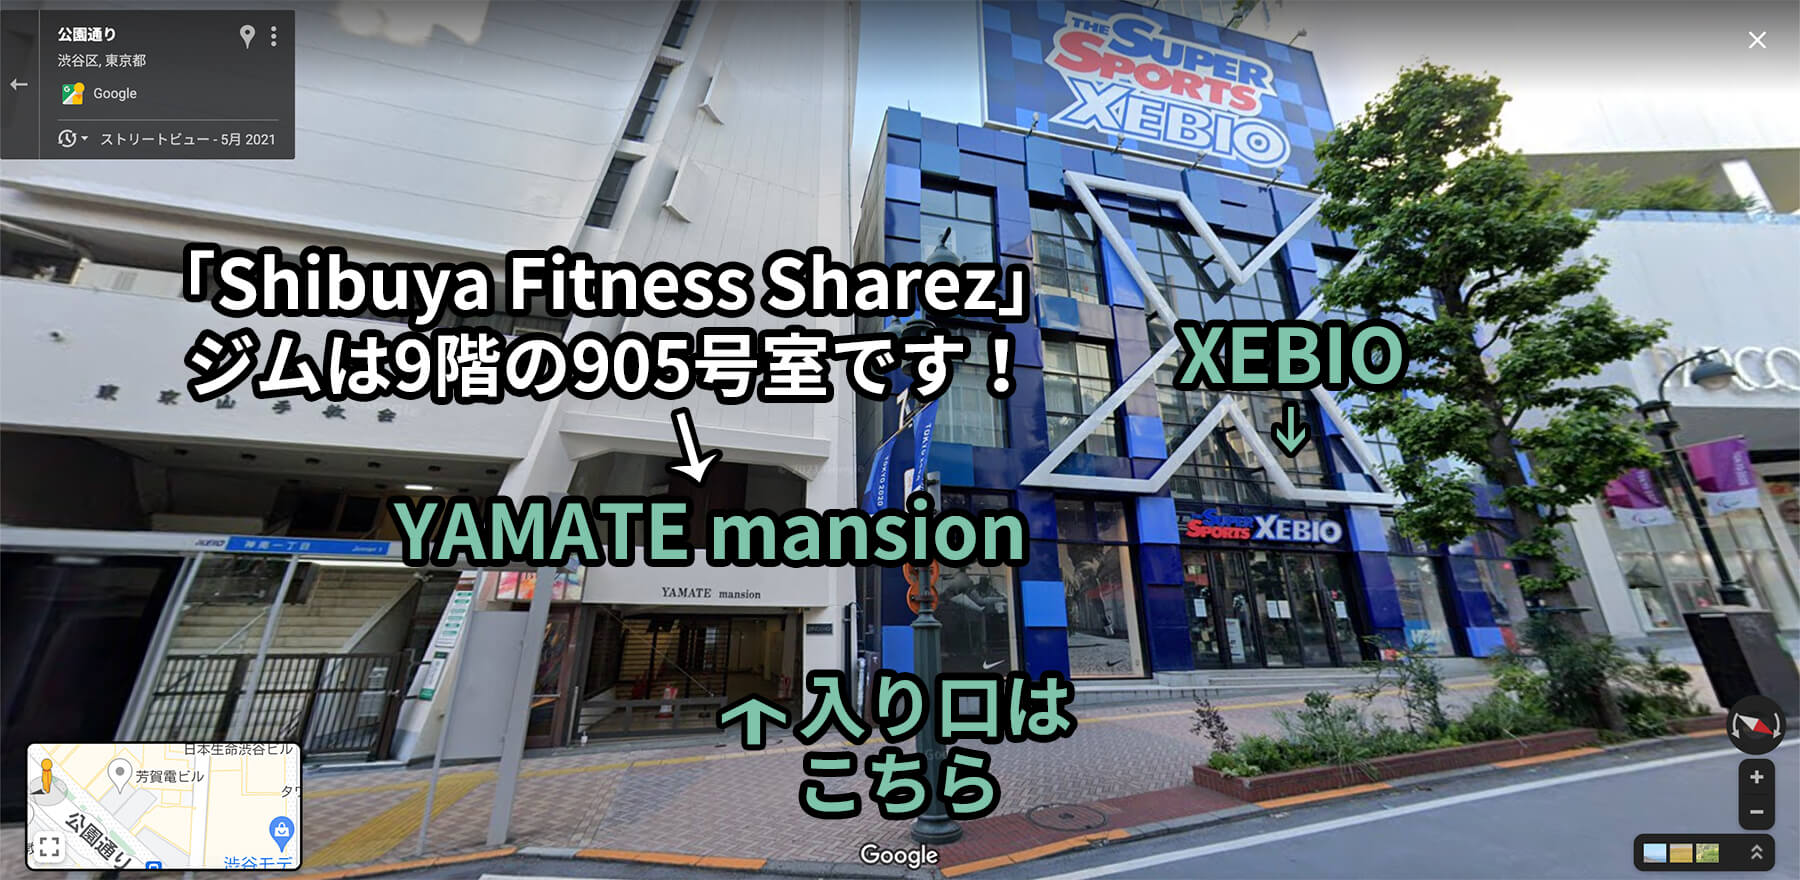 XEBIO」の手前のYAMATE mansionと書いてある白い建物にSharezジムが入っています。エレベータで9階に上がり905号室にお越しください